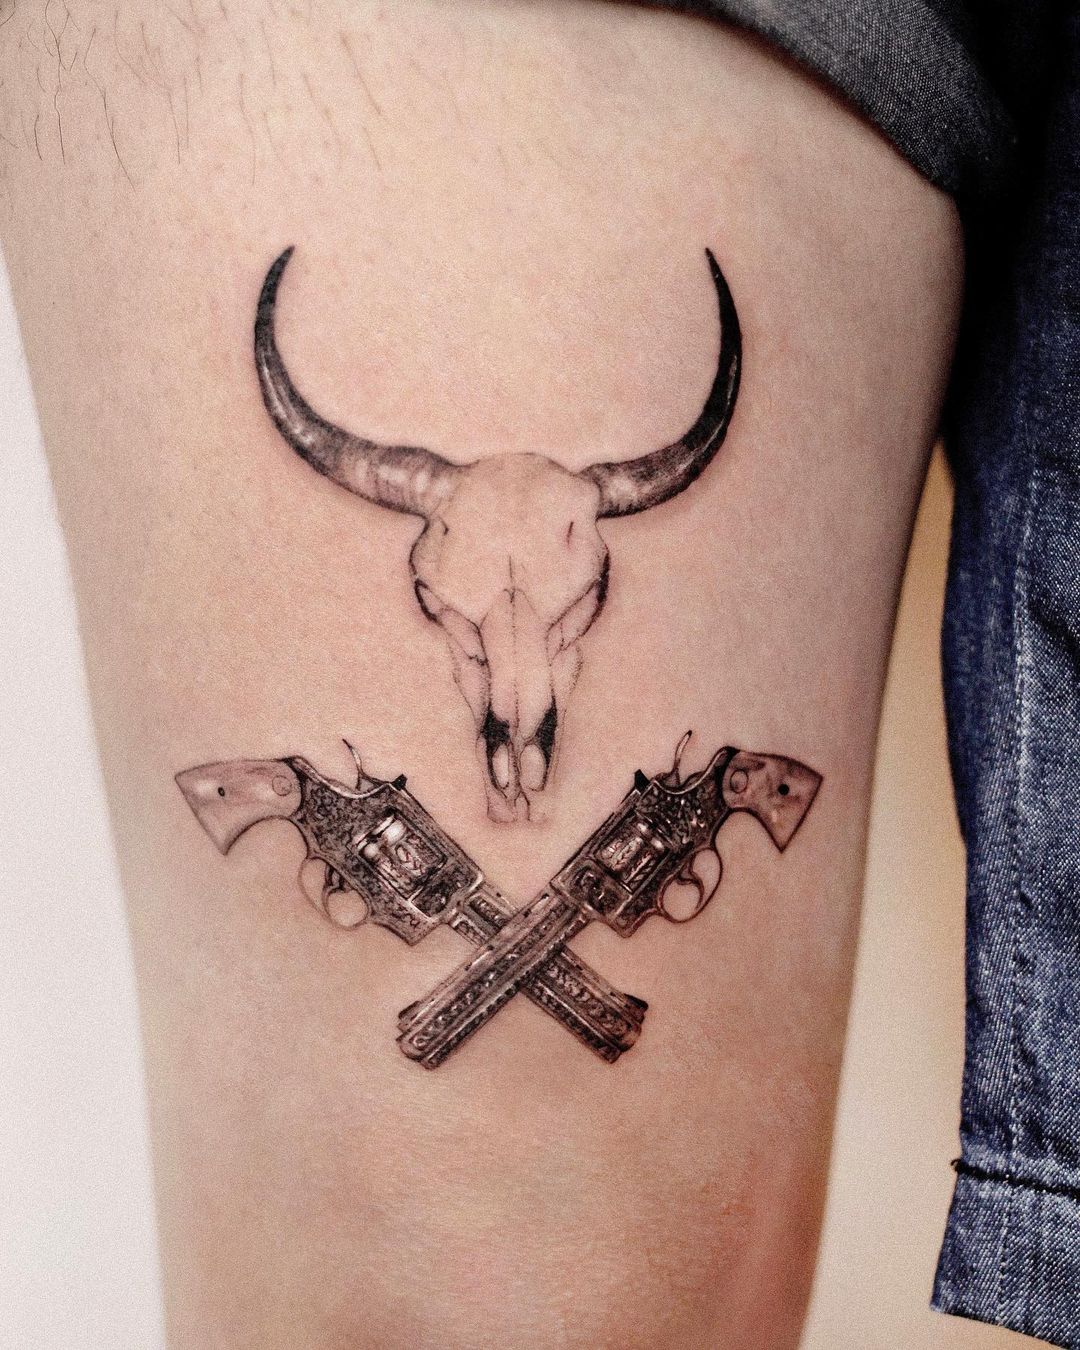 Gun tattoos by zoogreem.tattoo